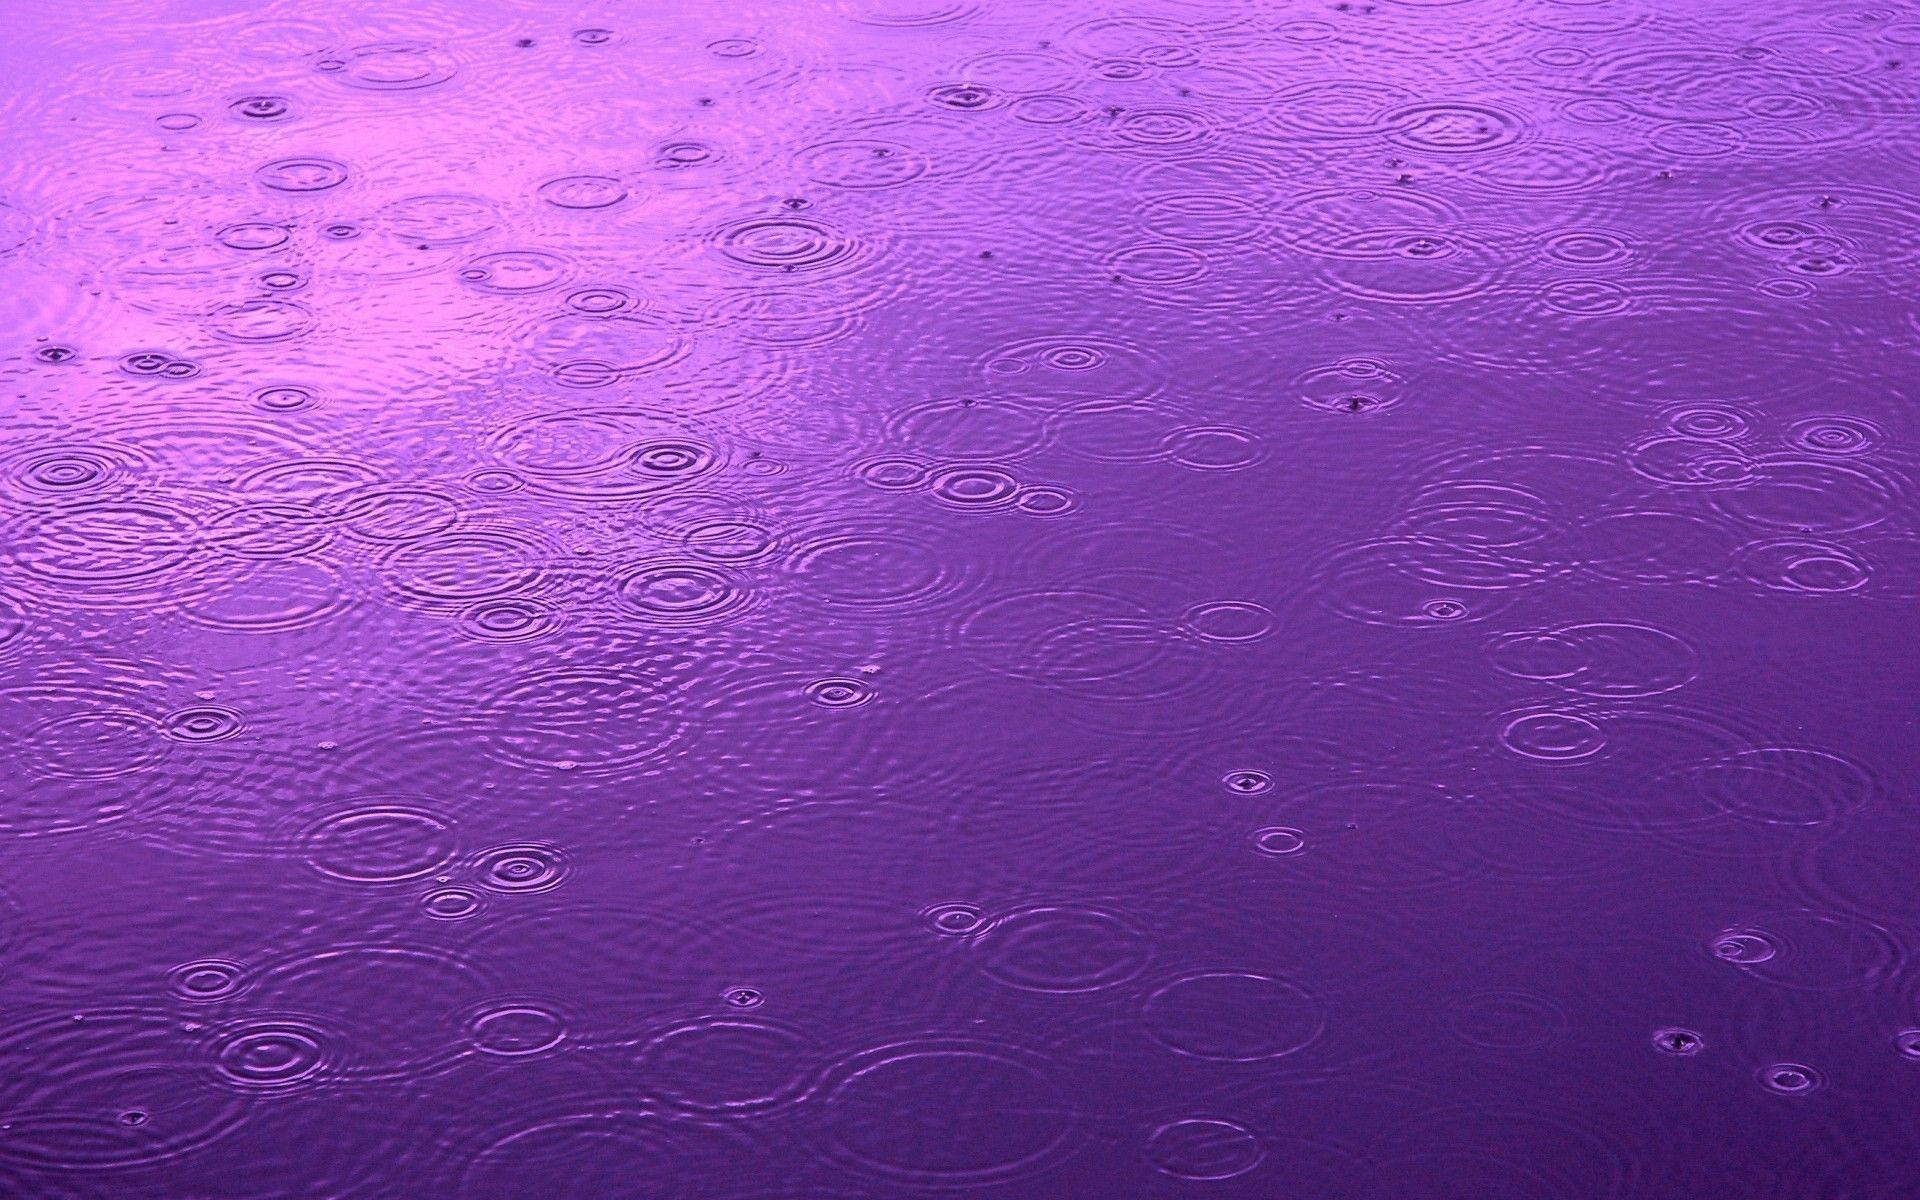 Raindrop Computer Wallpaper, Desktop Background 1920x1200 Id: 375811